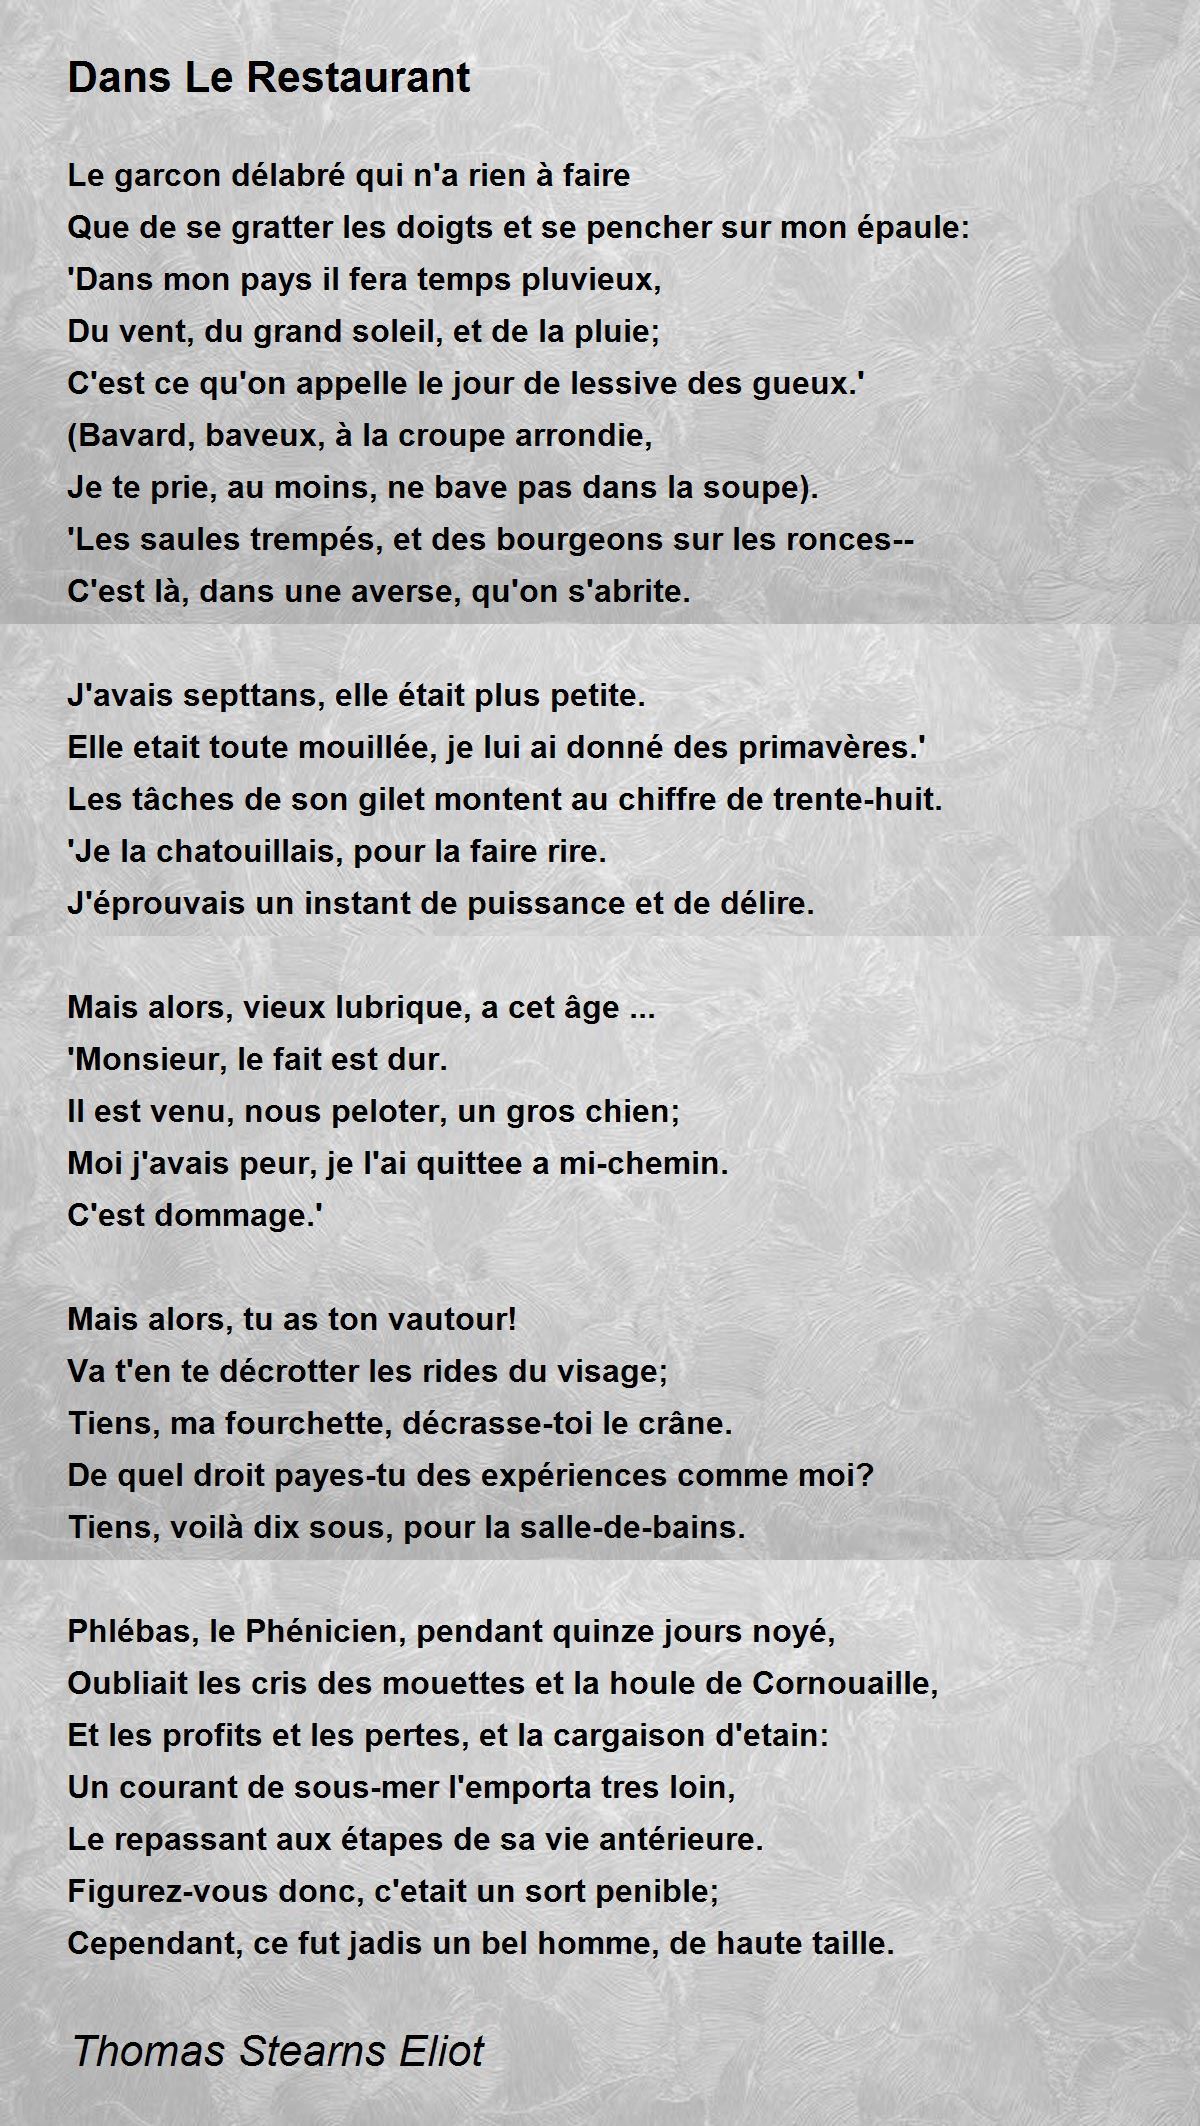 Dans Le Restaurant by Thomas Stearns Eliot - Dans Le Restaurant Poem